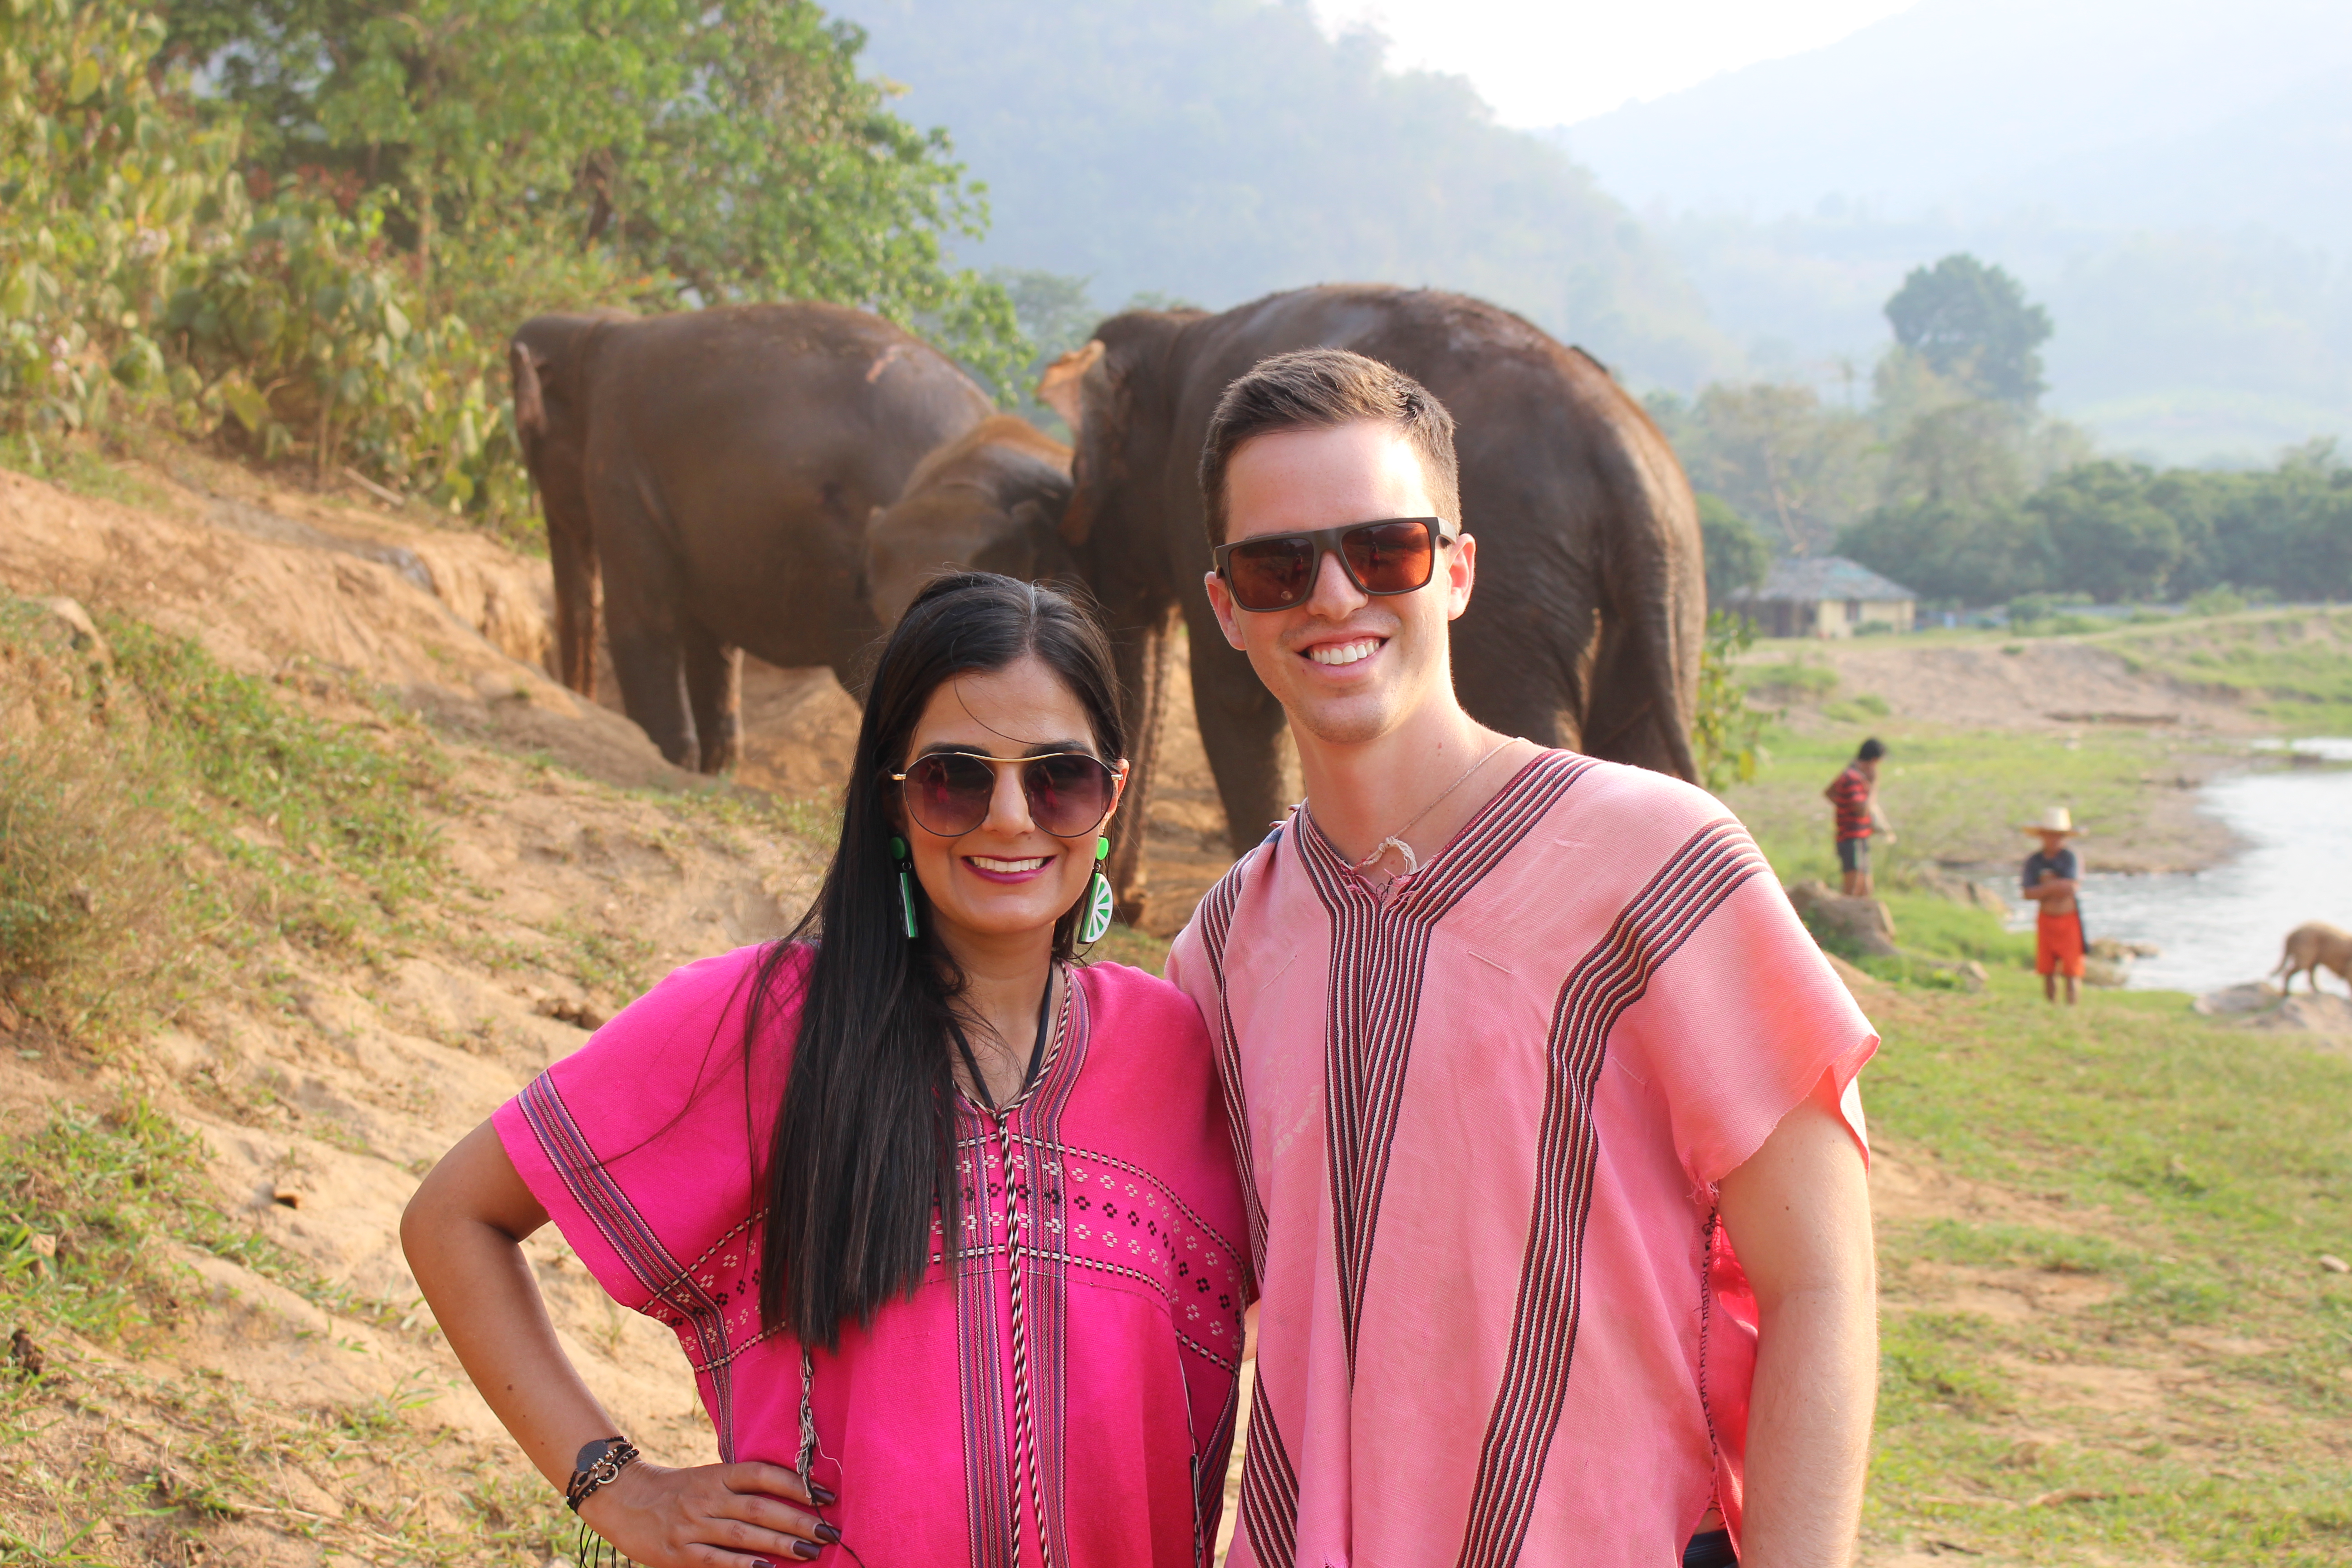 Visitando um santuário de elefantes em Chiang Mai